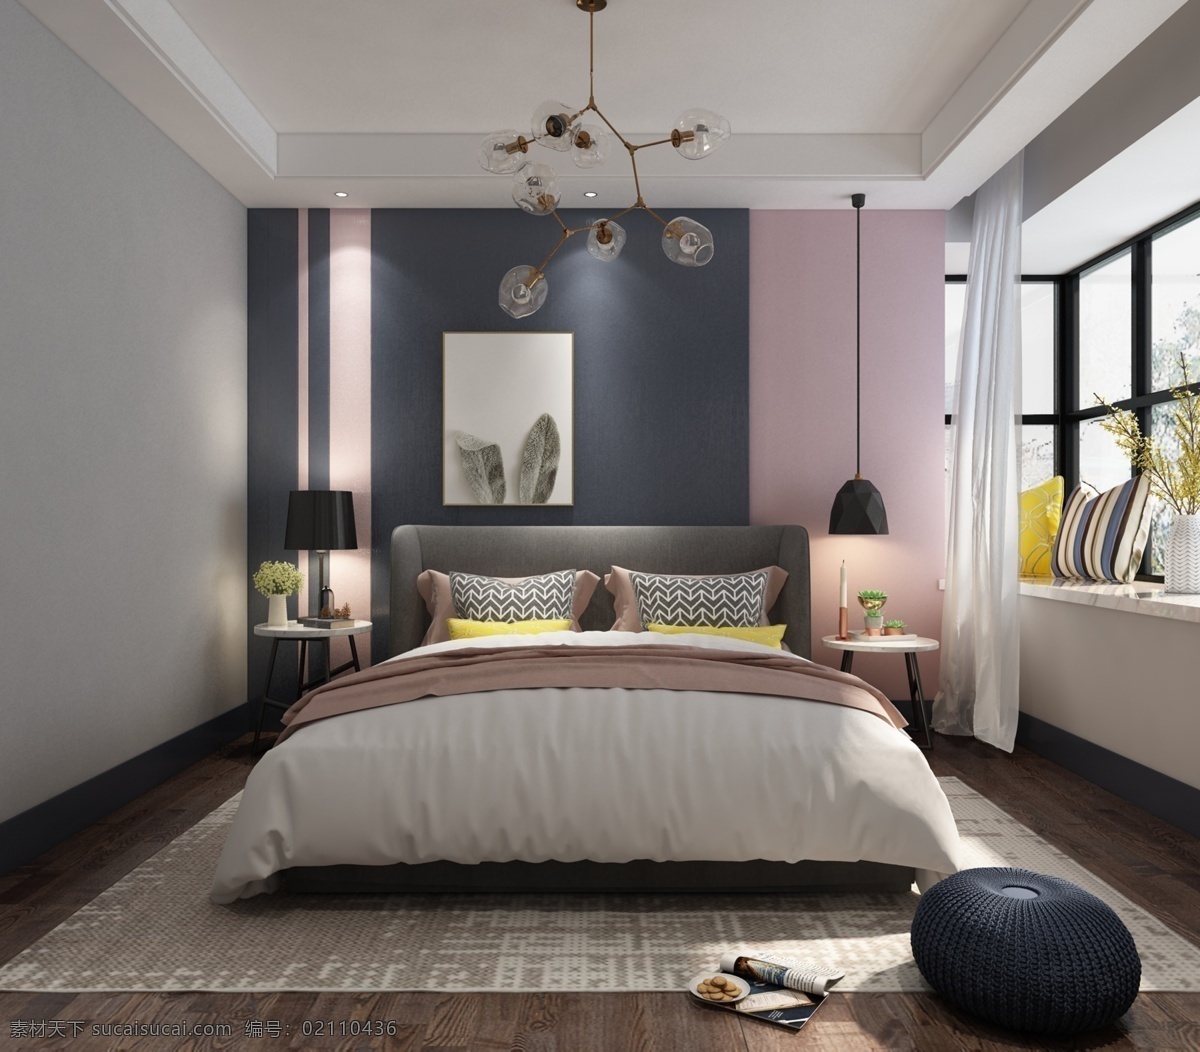 现代卧室 卧室 床 飘窗 背景墙 木地板 环境设计 室内设计